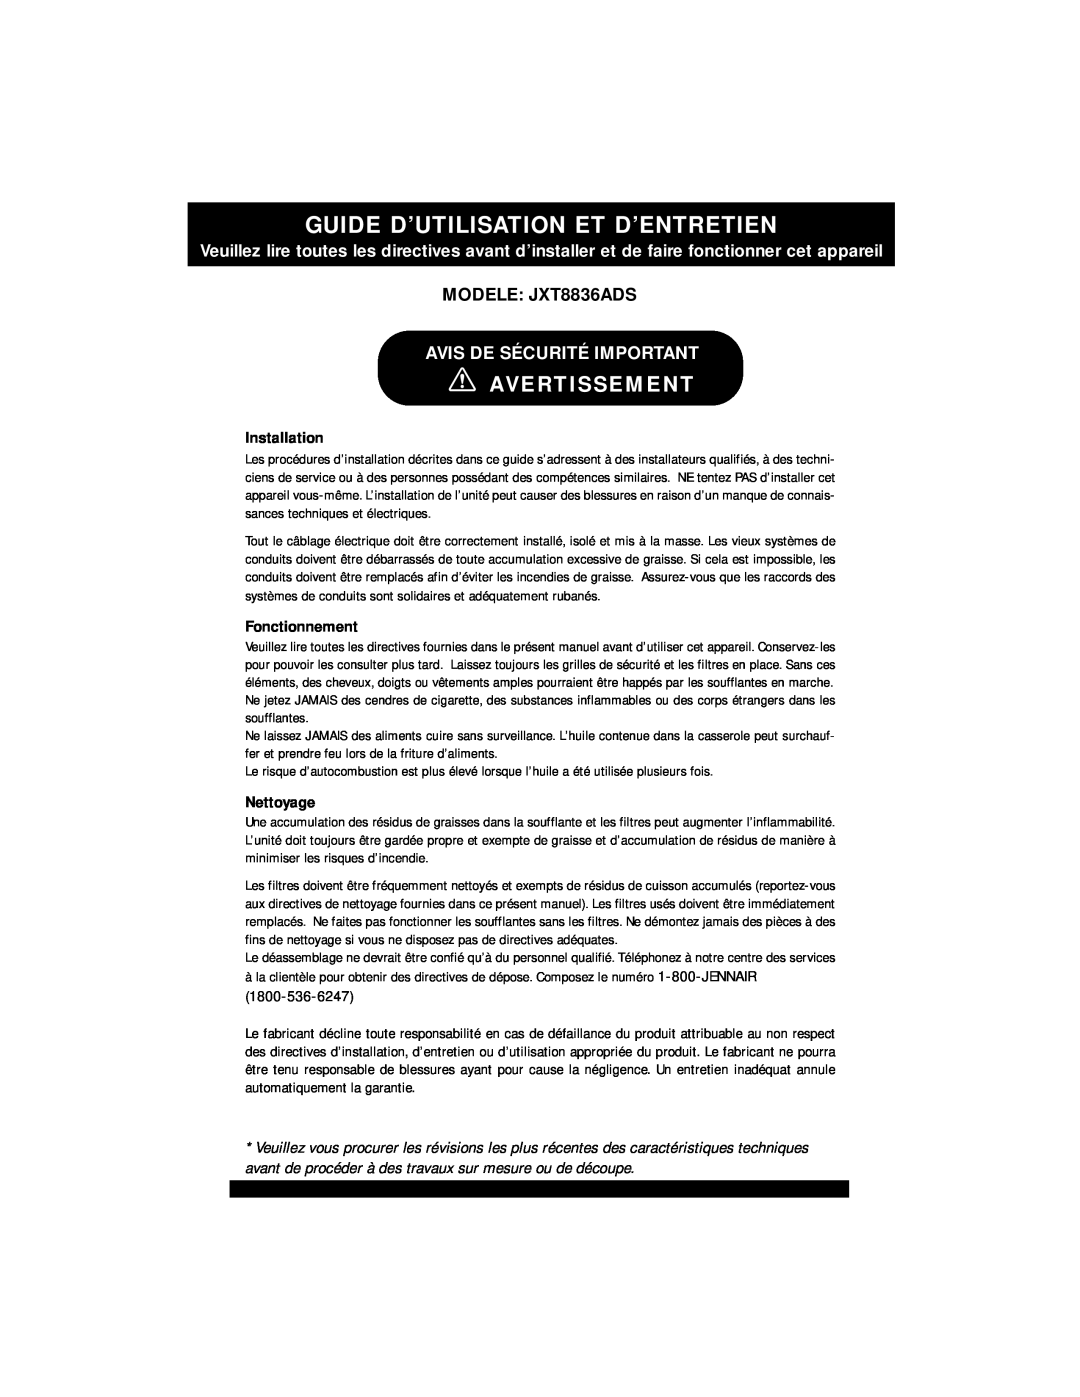 Jenn-Air Guide D’Utilisation Et D’Entretien, Avertissement, MODELE JXT8836ADS, Avis De Sécurité Important, Nettoyage 